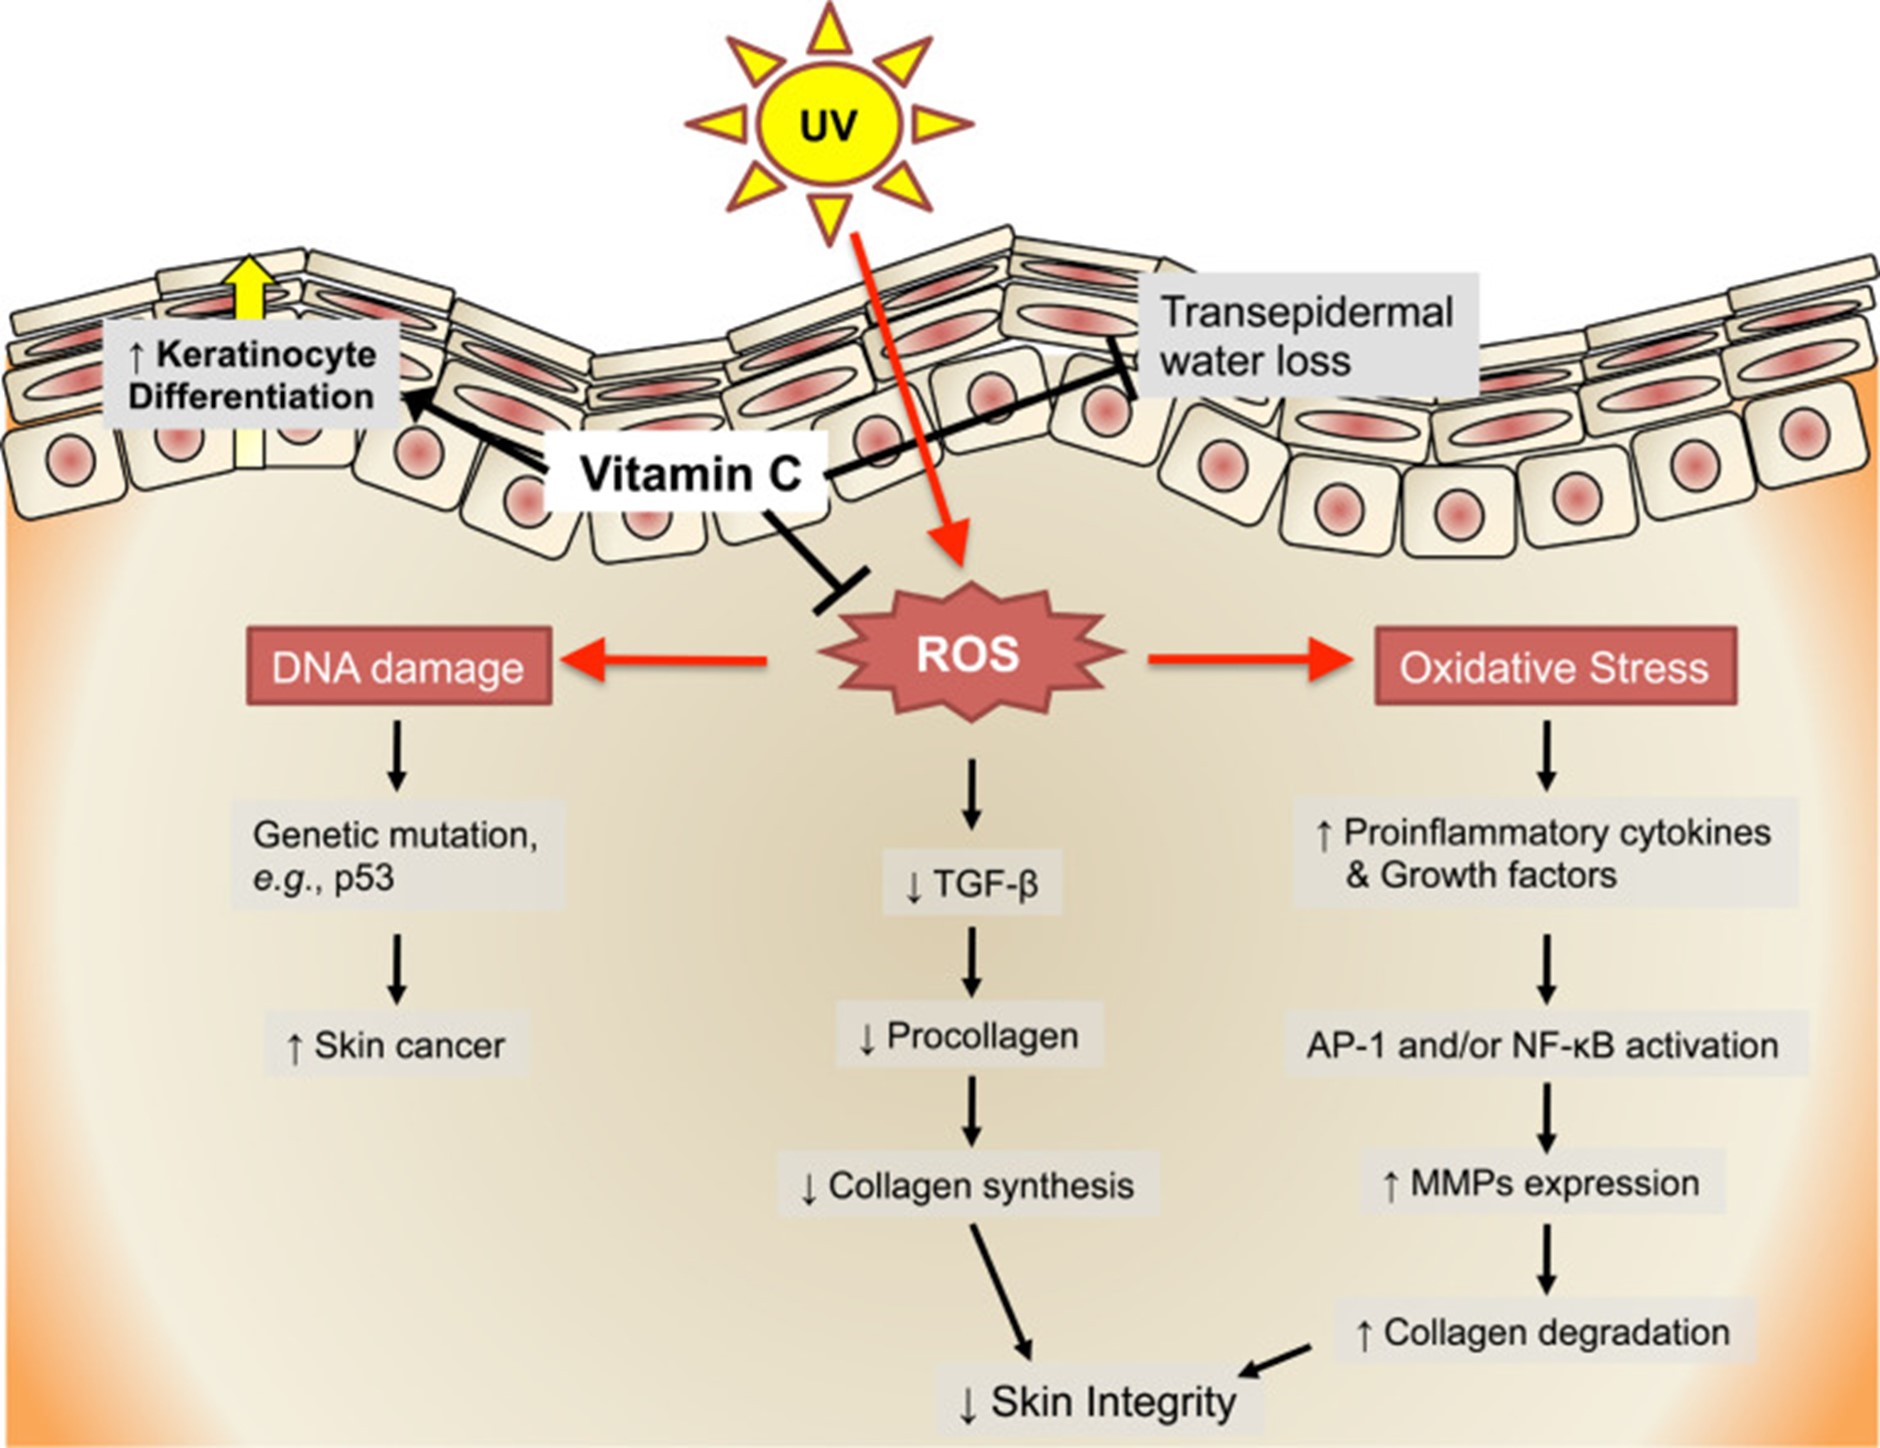 imagem da pele e os processos da vitamina c para formação de colágeno